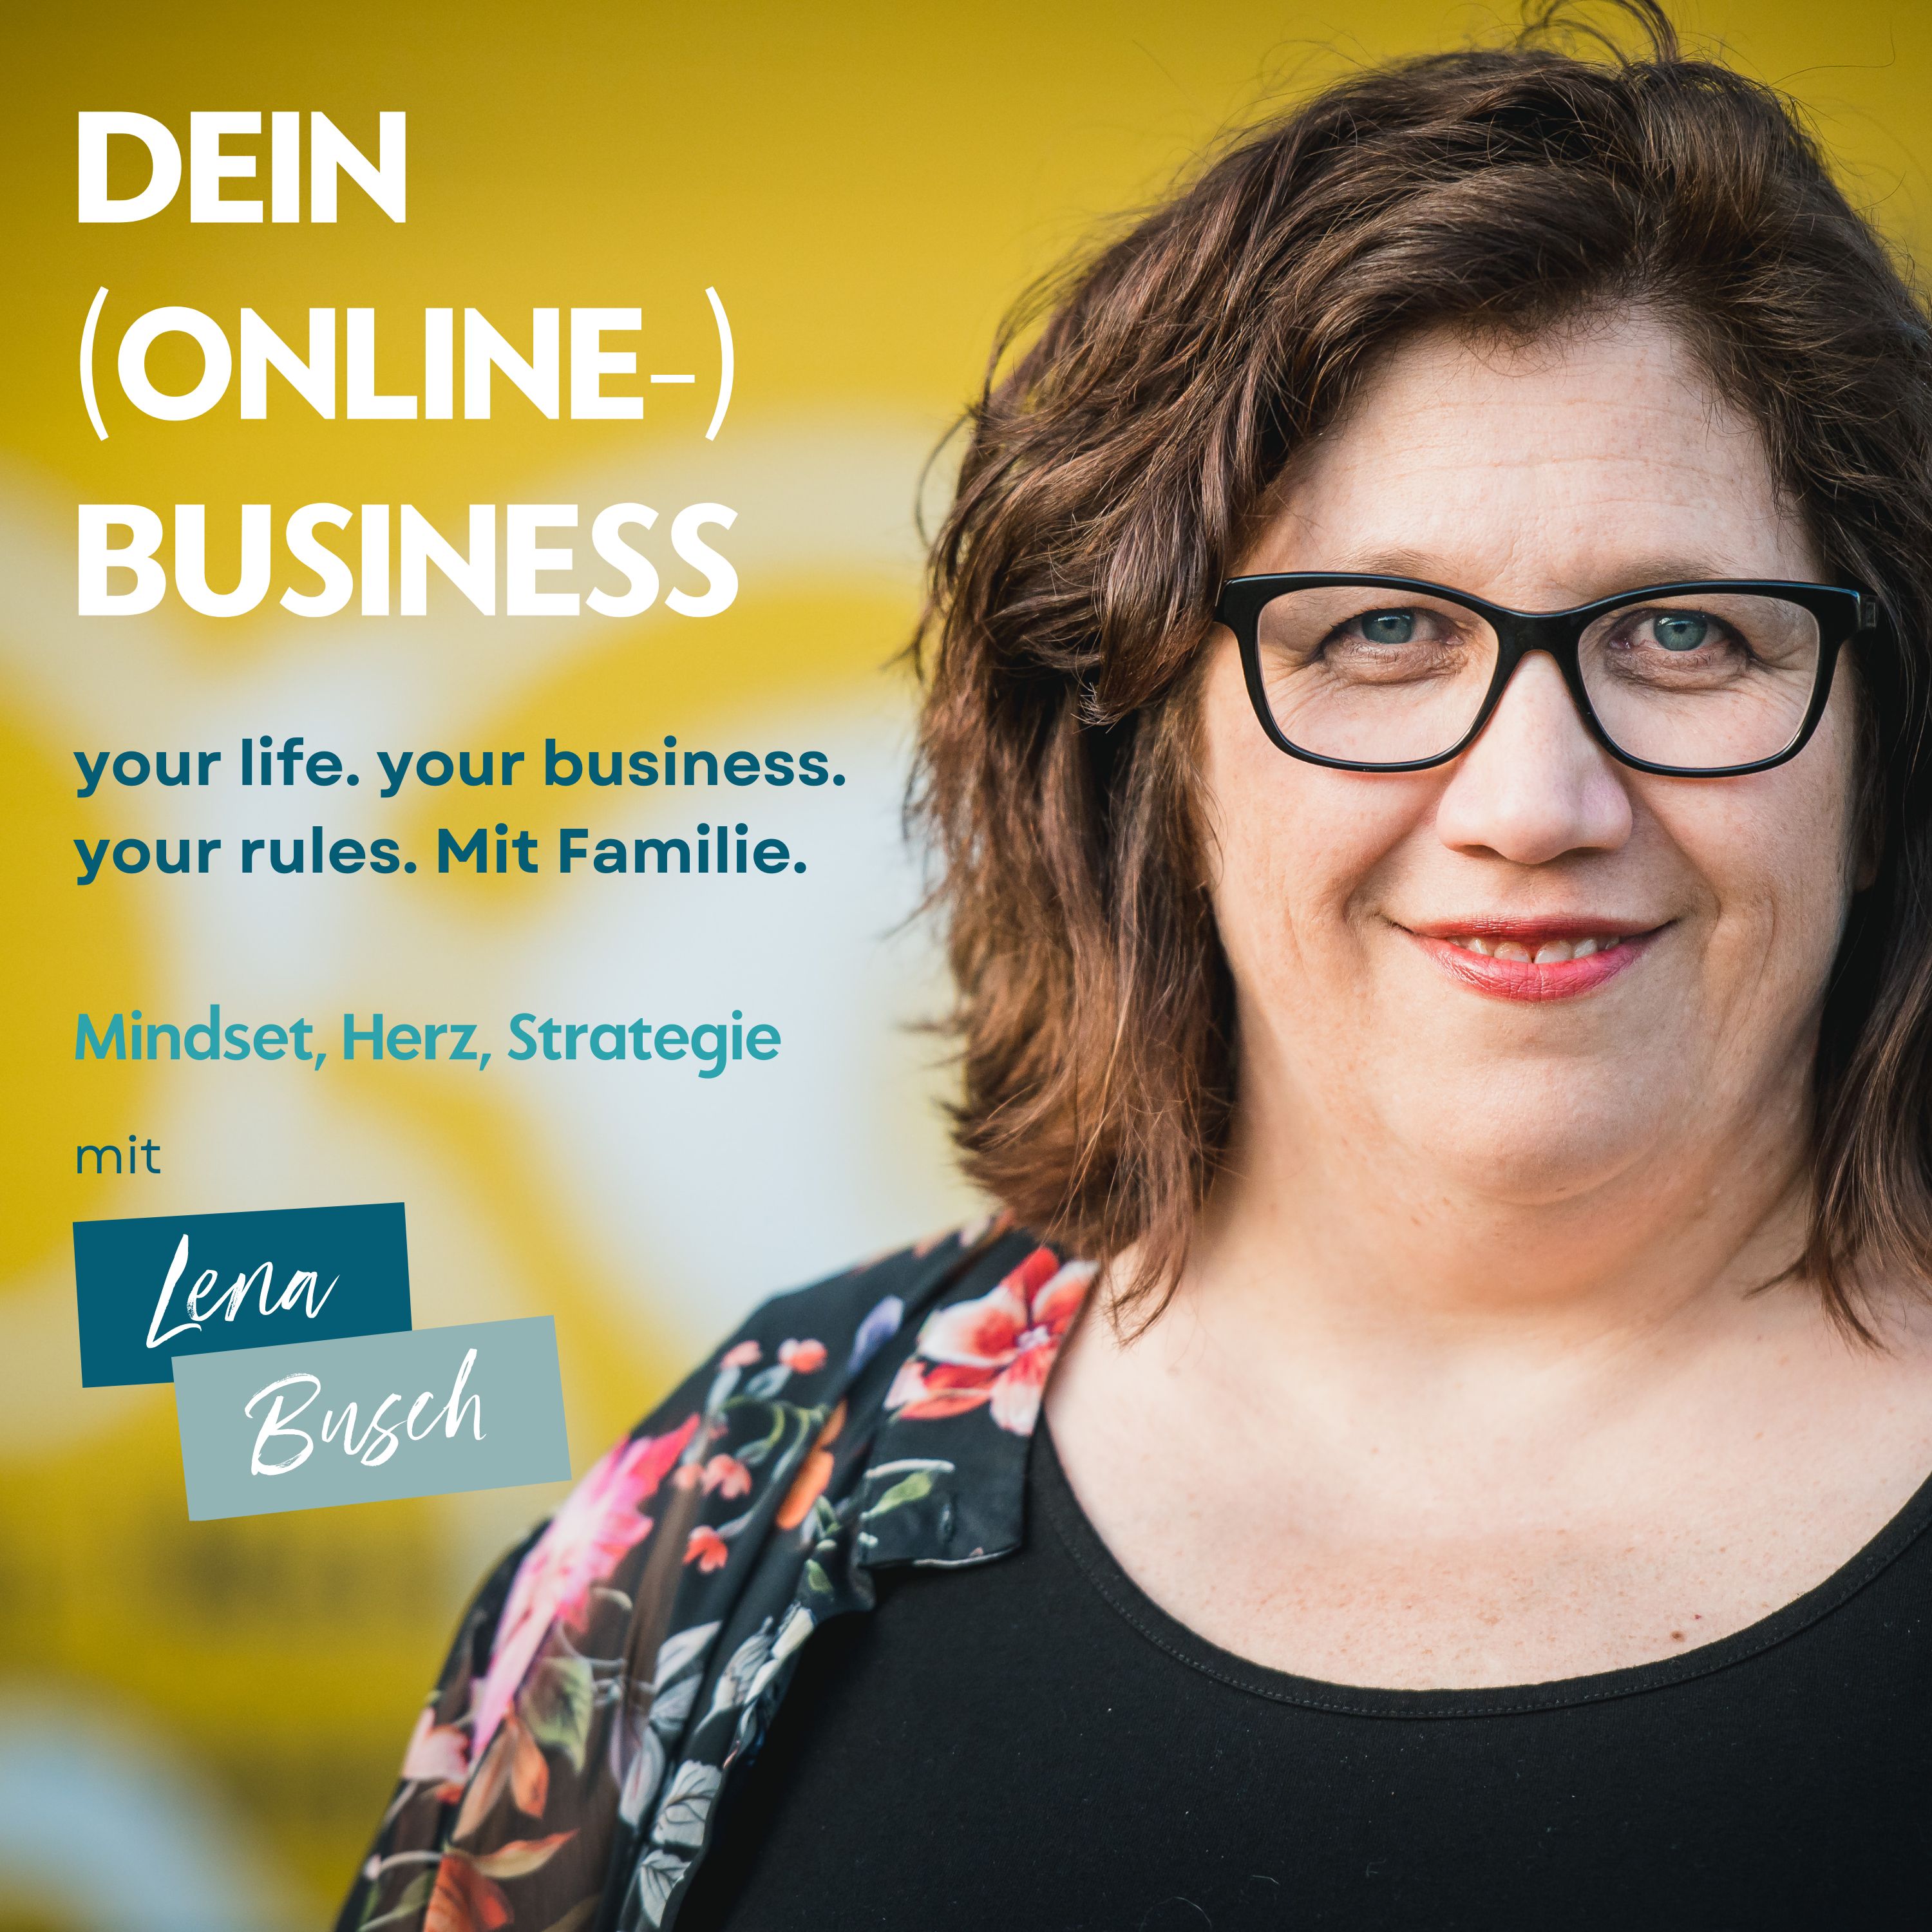 DEIN Online-Business mit Lena Busch - der 